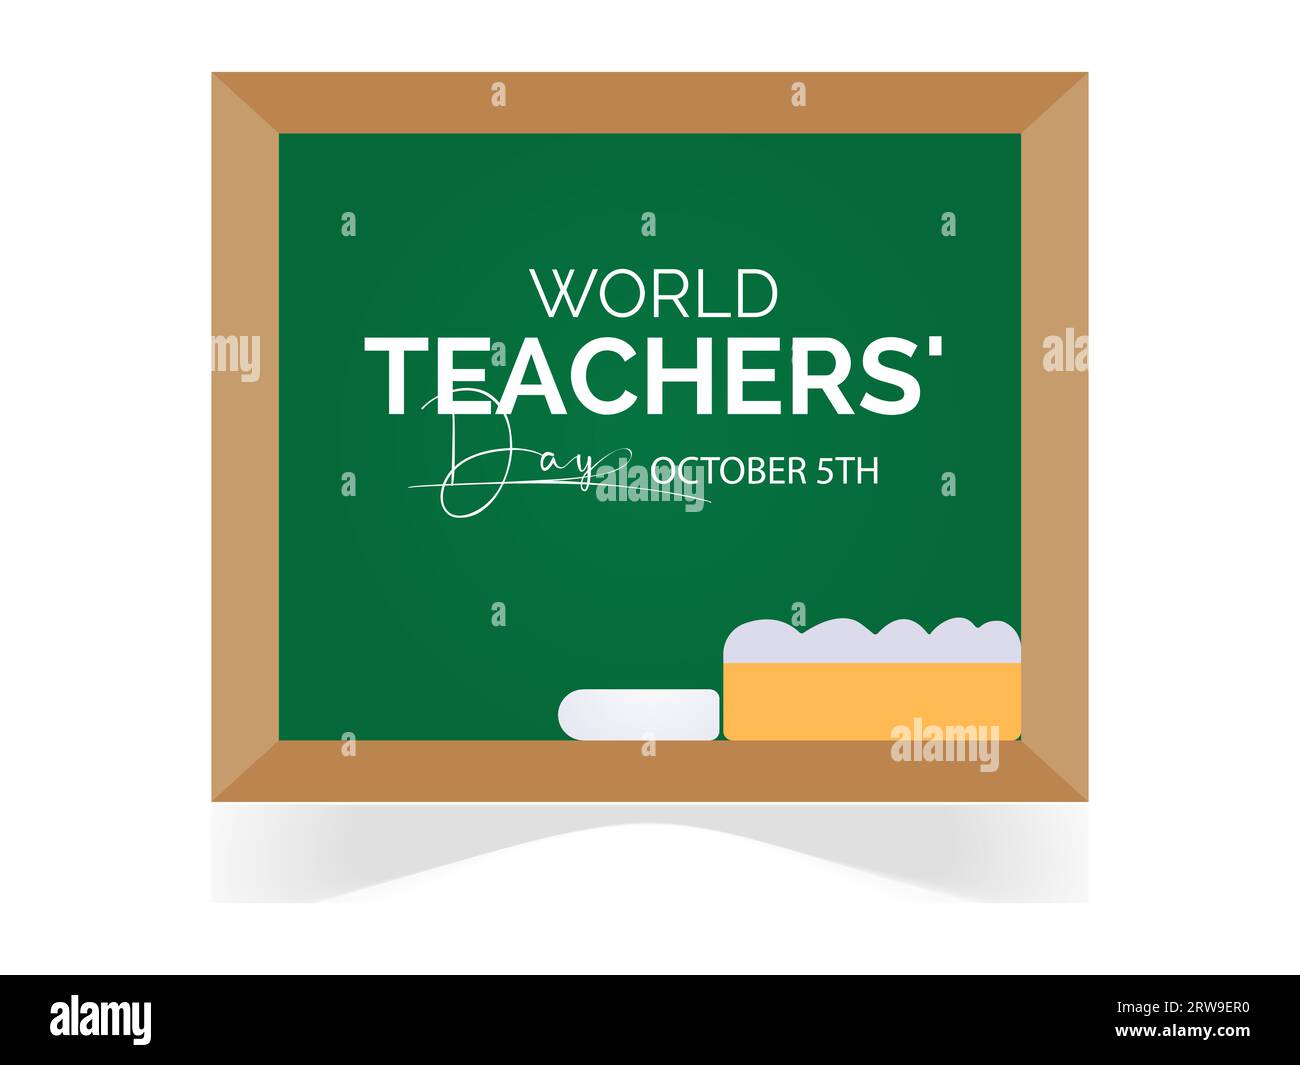 La Journée mondiale des enseignants reconnaît le dévouement, l'innovation et l'influence transformatrice des enseignants du monde entier. Modèle d'illustration vectorielle. Illustration de Vecteur